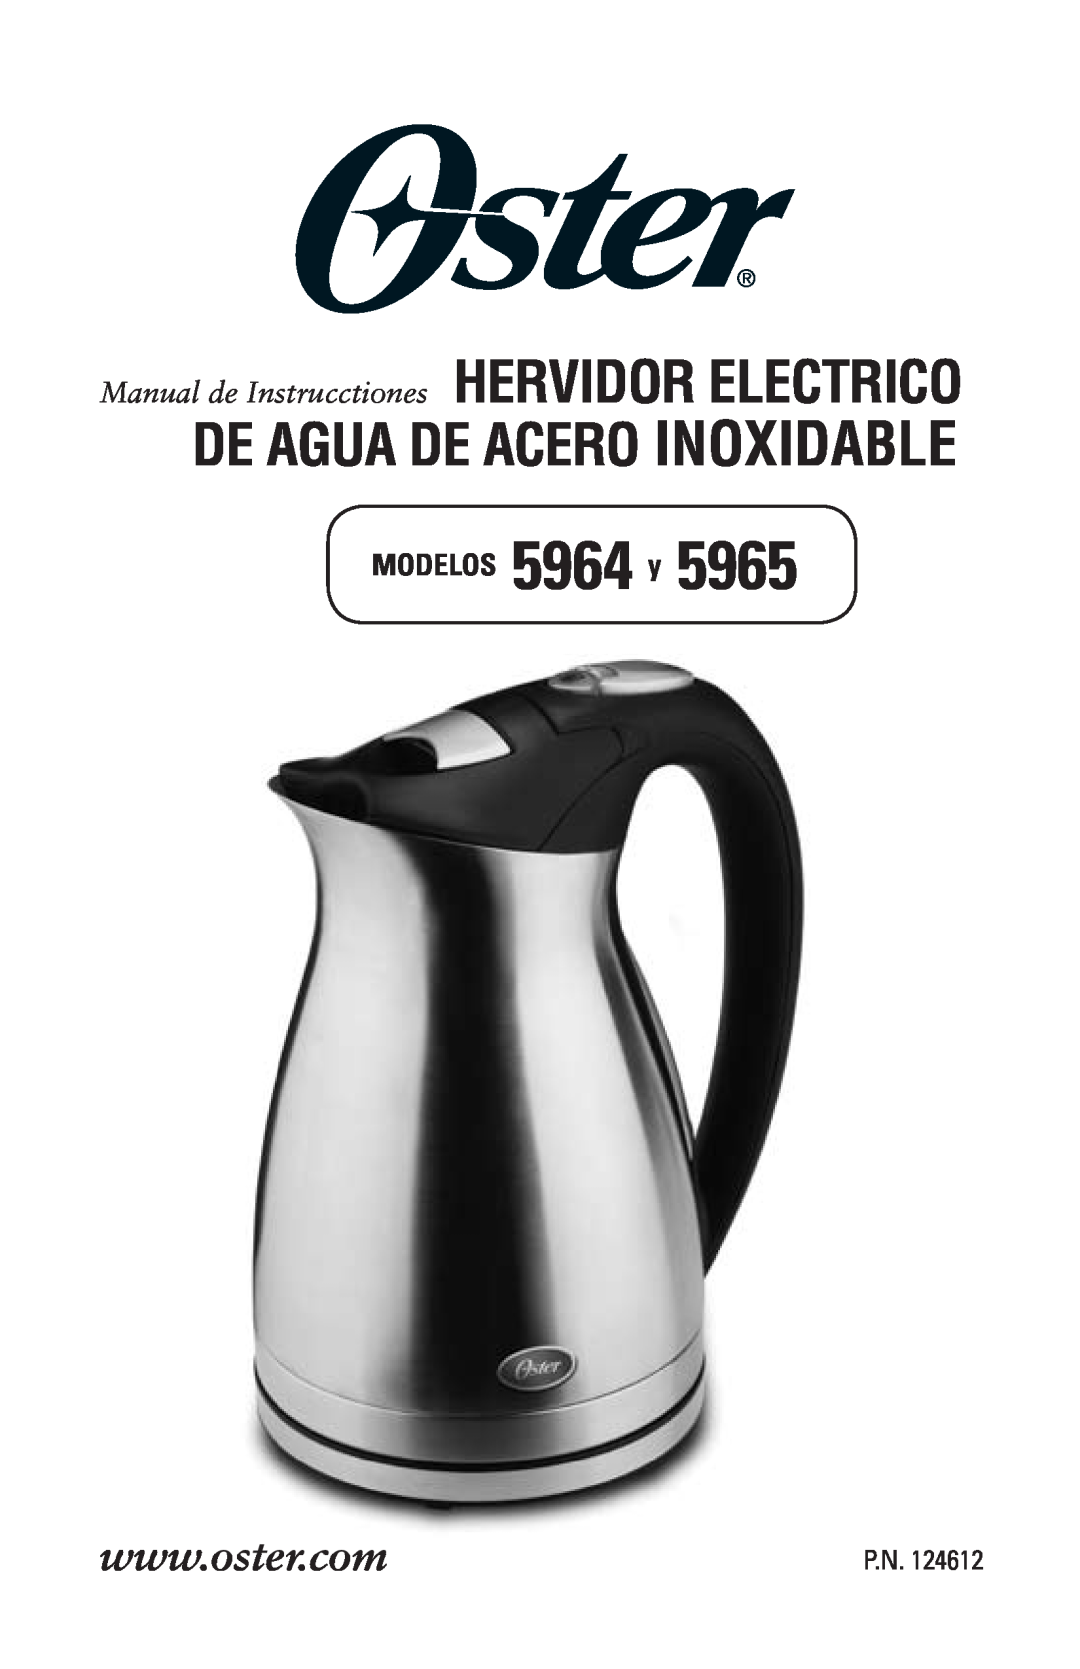 Oster 124612, 5965 user manual De Agua De Acero Inoxidable, MODELOS 5964 y, Manual de Instrucctiones HERVIDOR ELECTRICO, P.N 